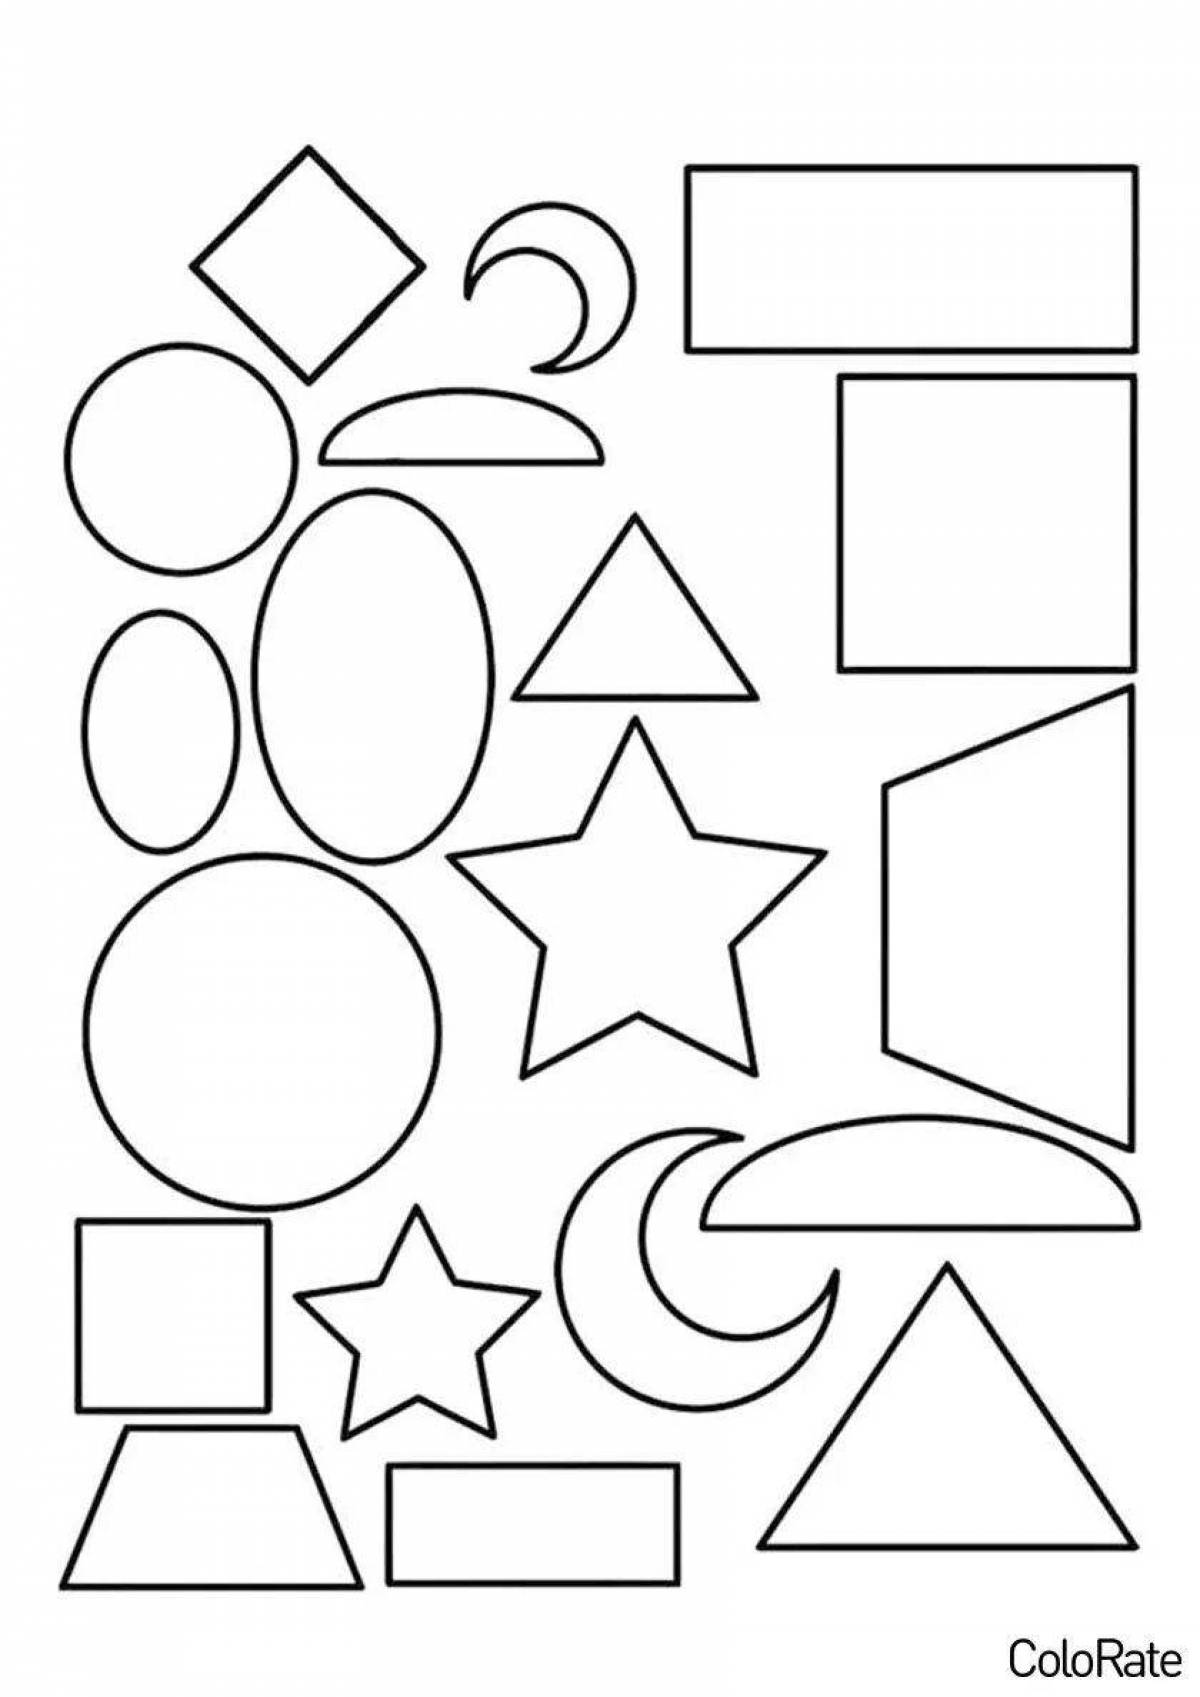 Веселые геометрические фигуры раскраски для детей 5-6 лет